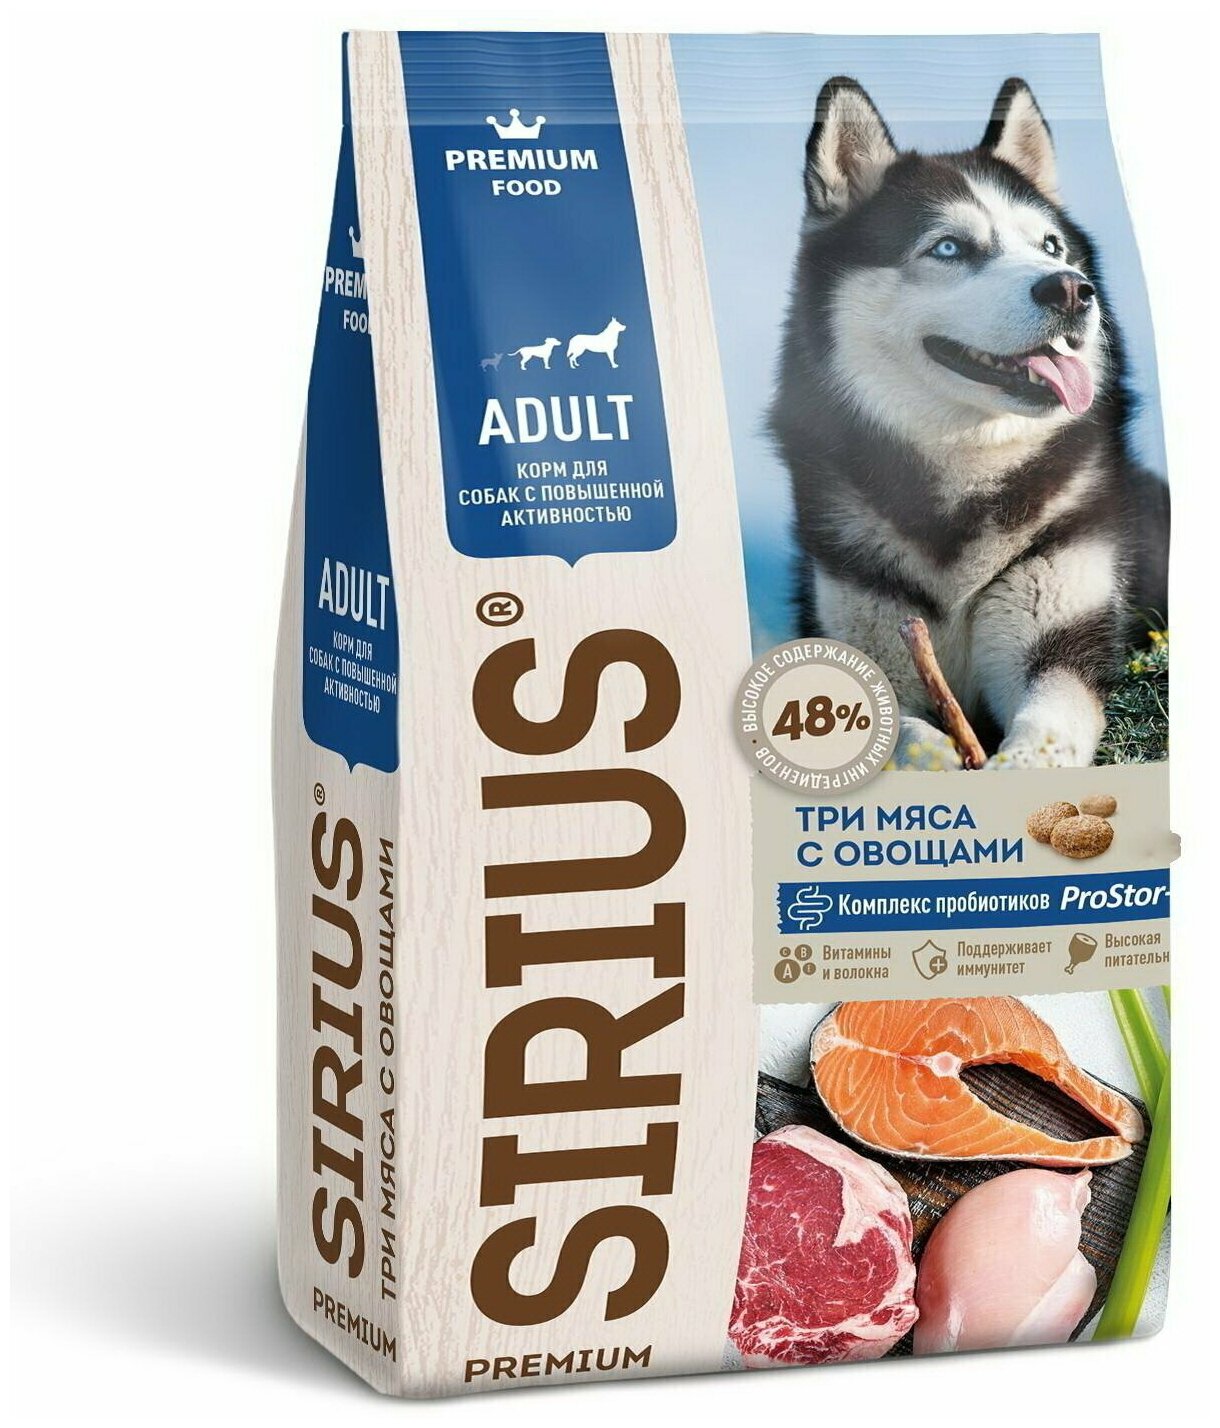 Sirius Сухой корм для собак с повышенной активностью Три мяса с овощами, 2000 г